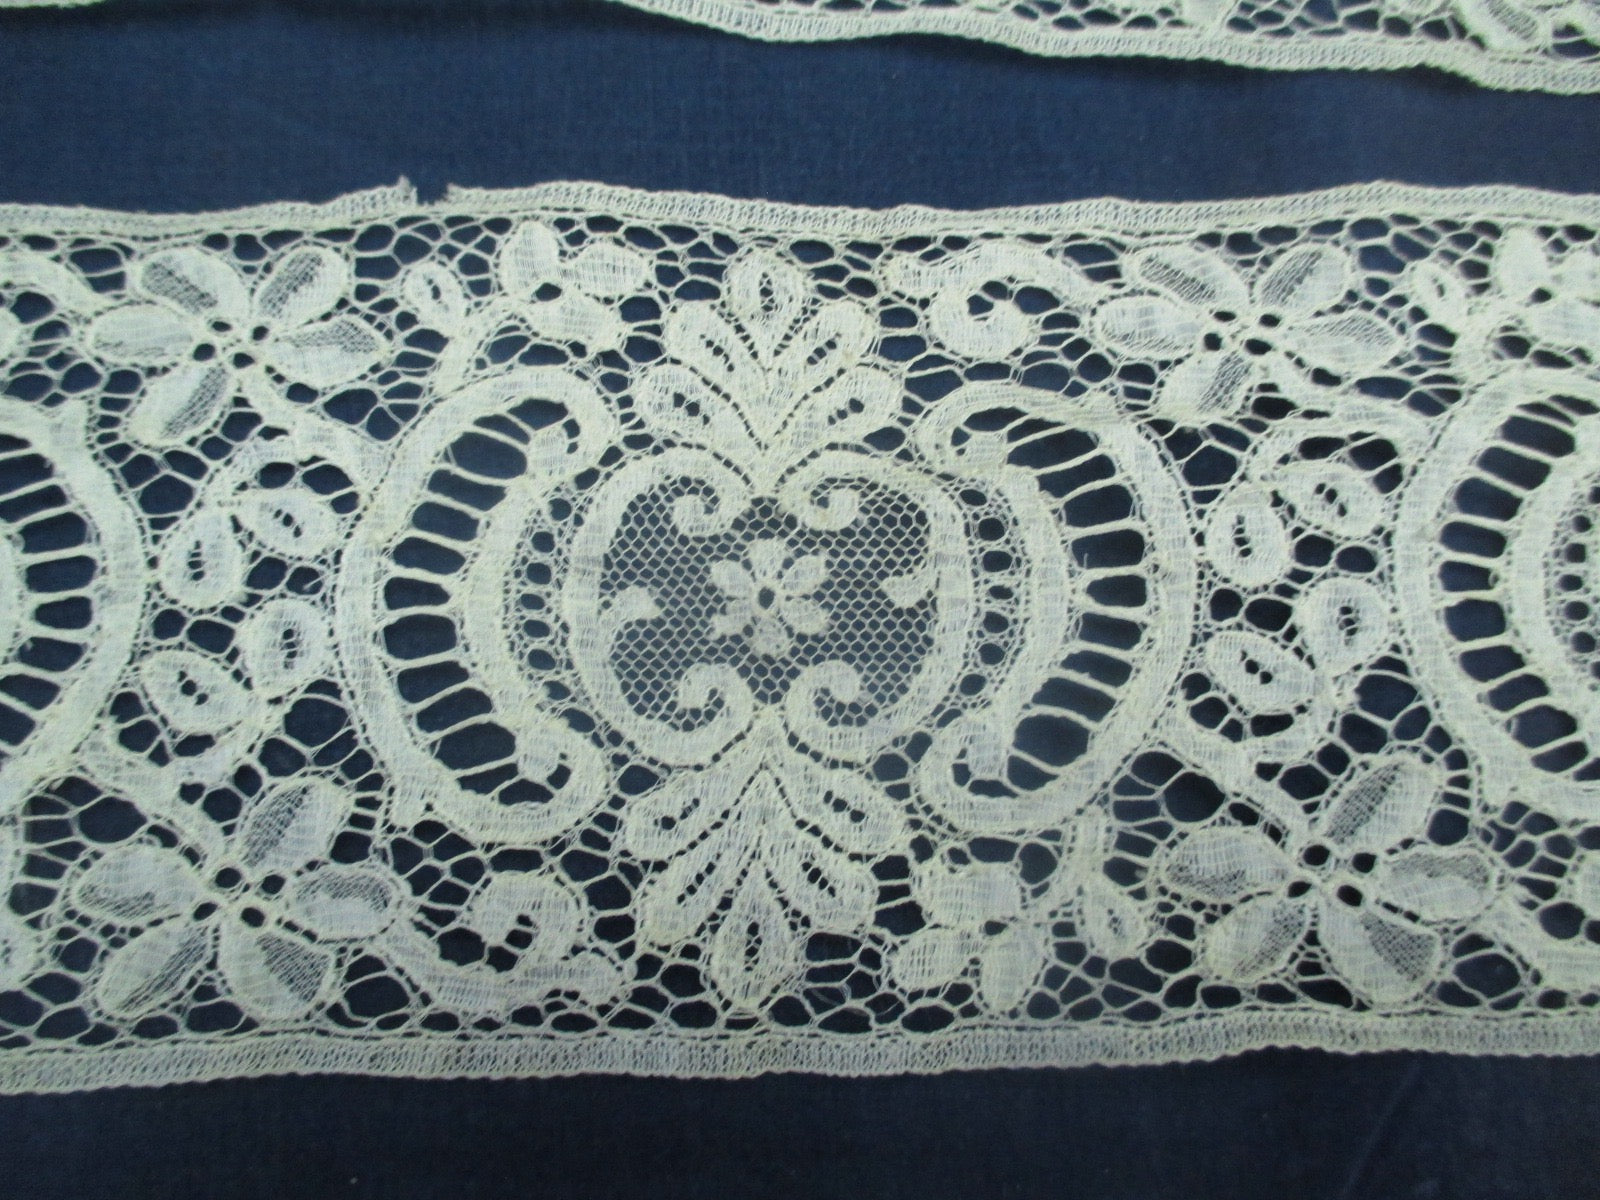 Antique Victorian Cotton lace trim